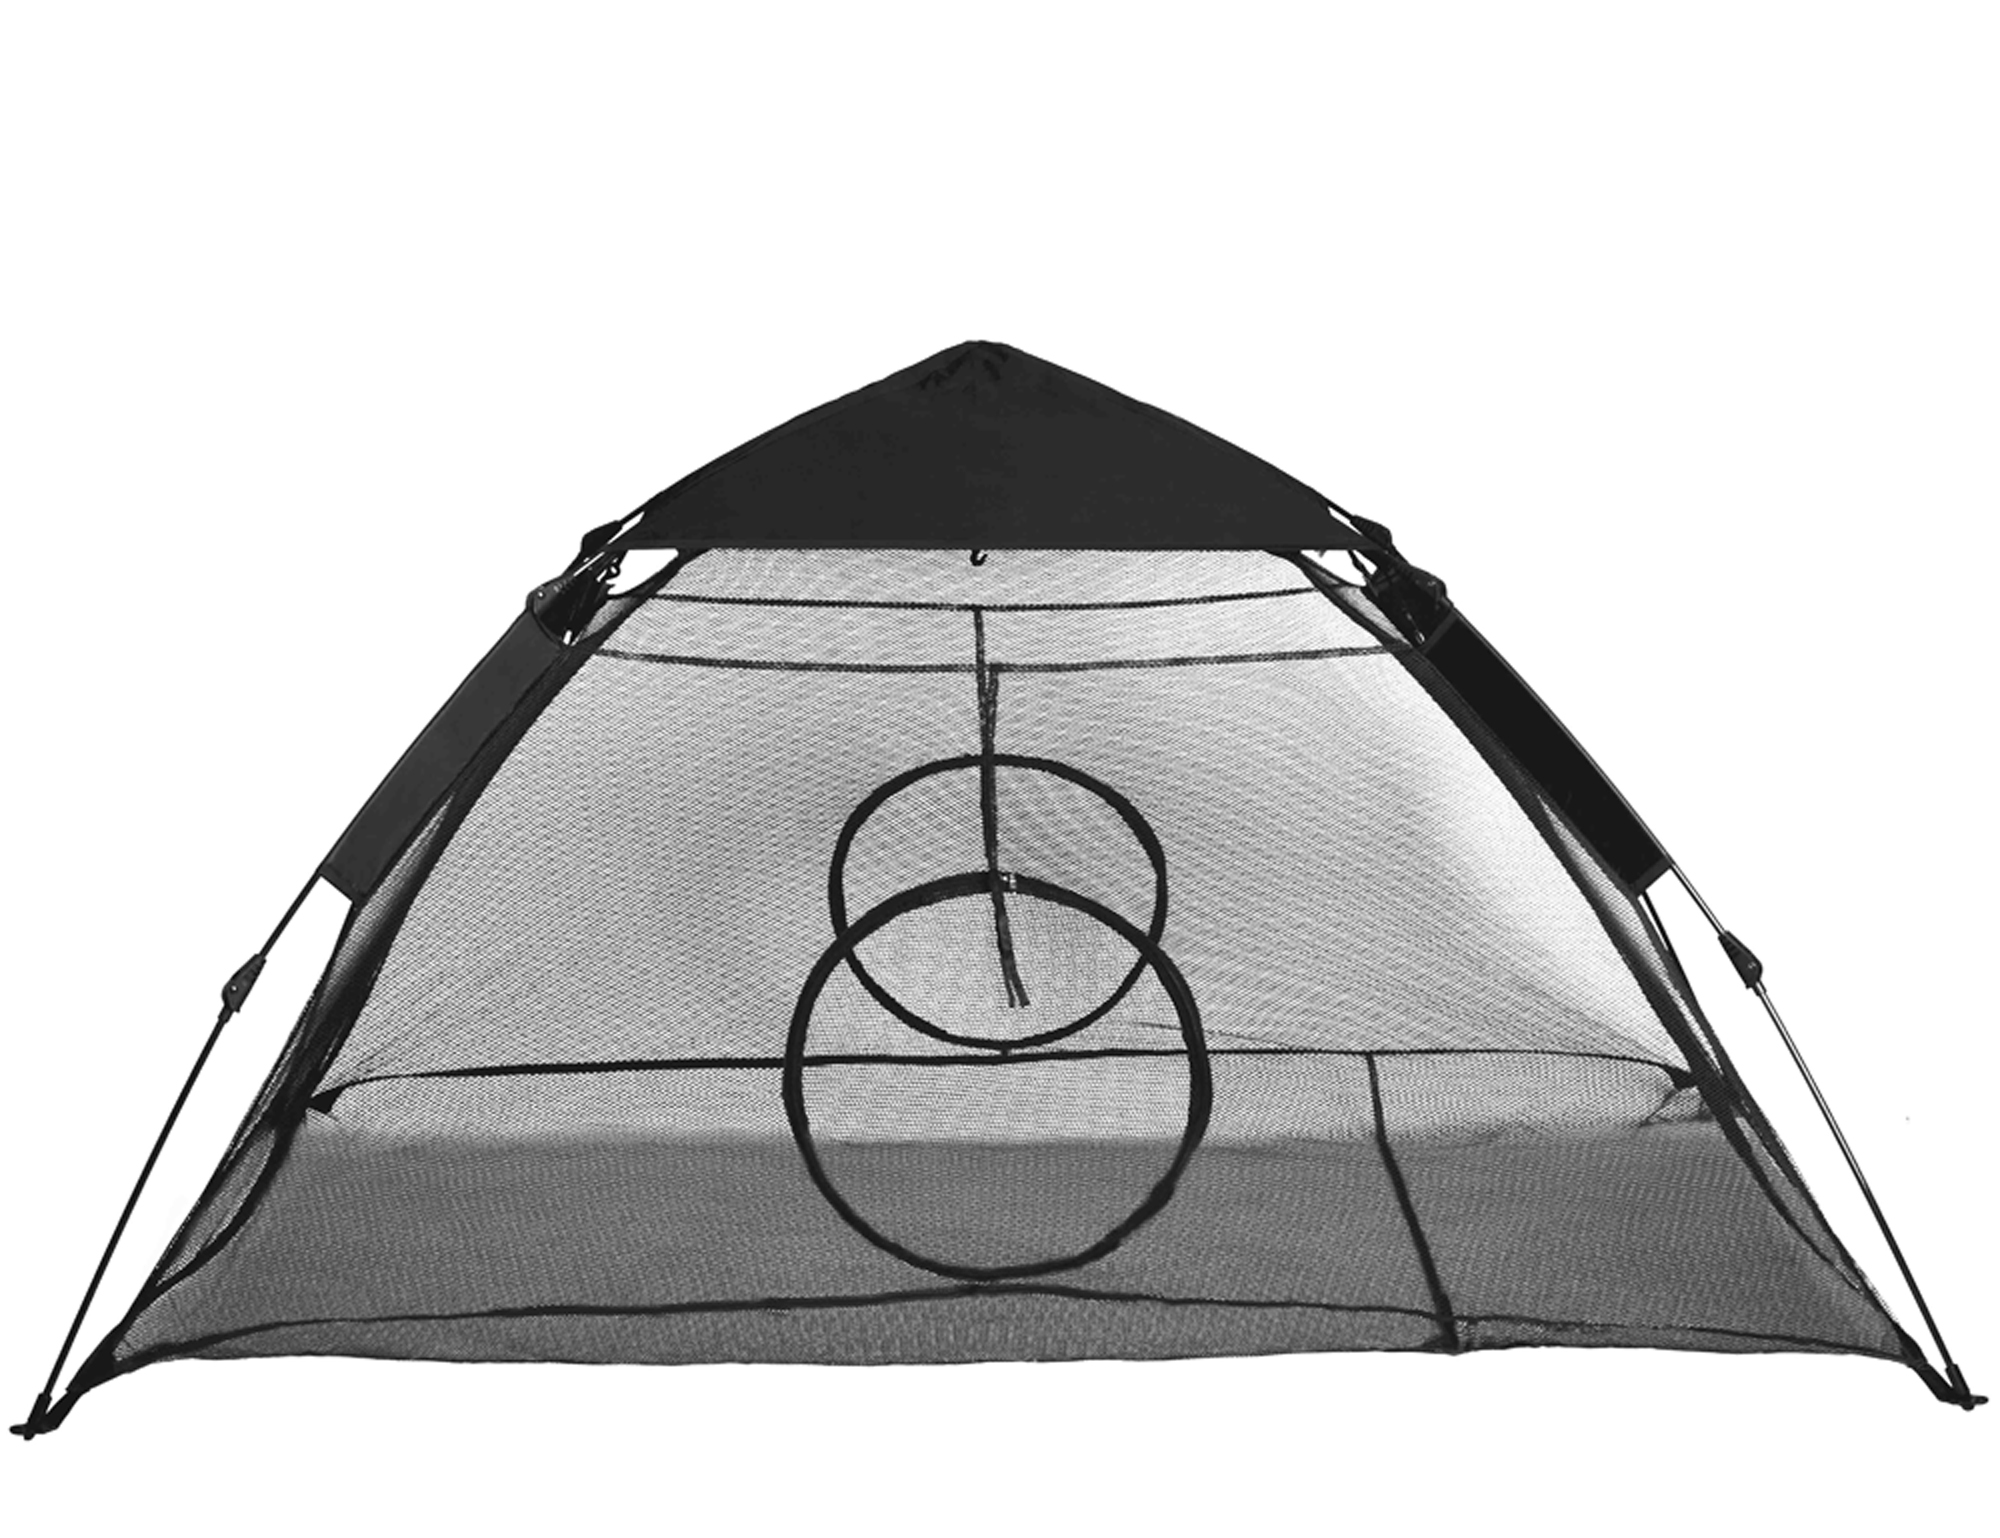 RORAIMA Instant Portable Outdoor Cat Tent RMPT001